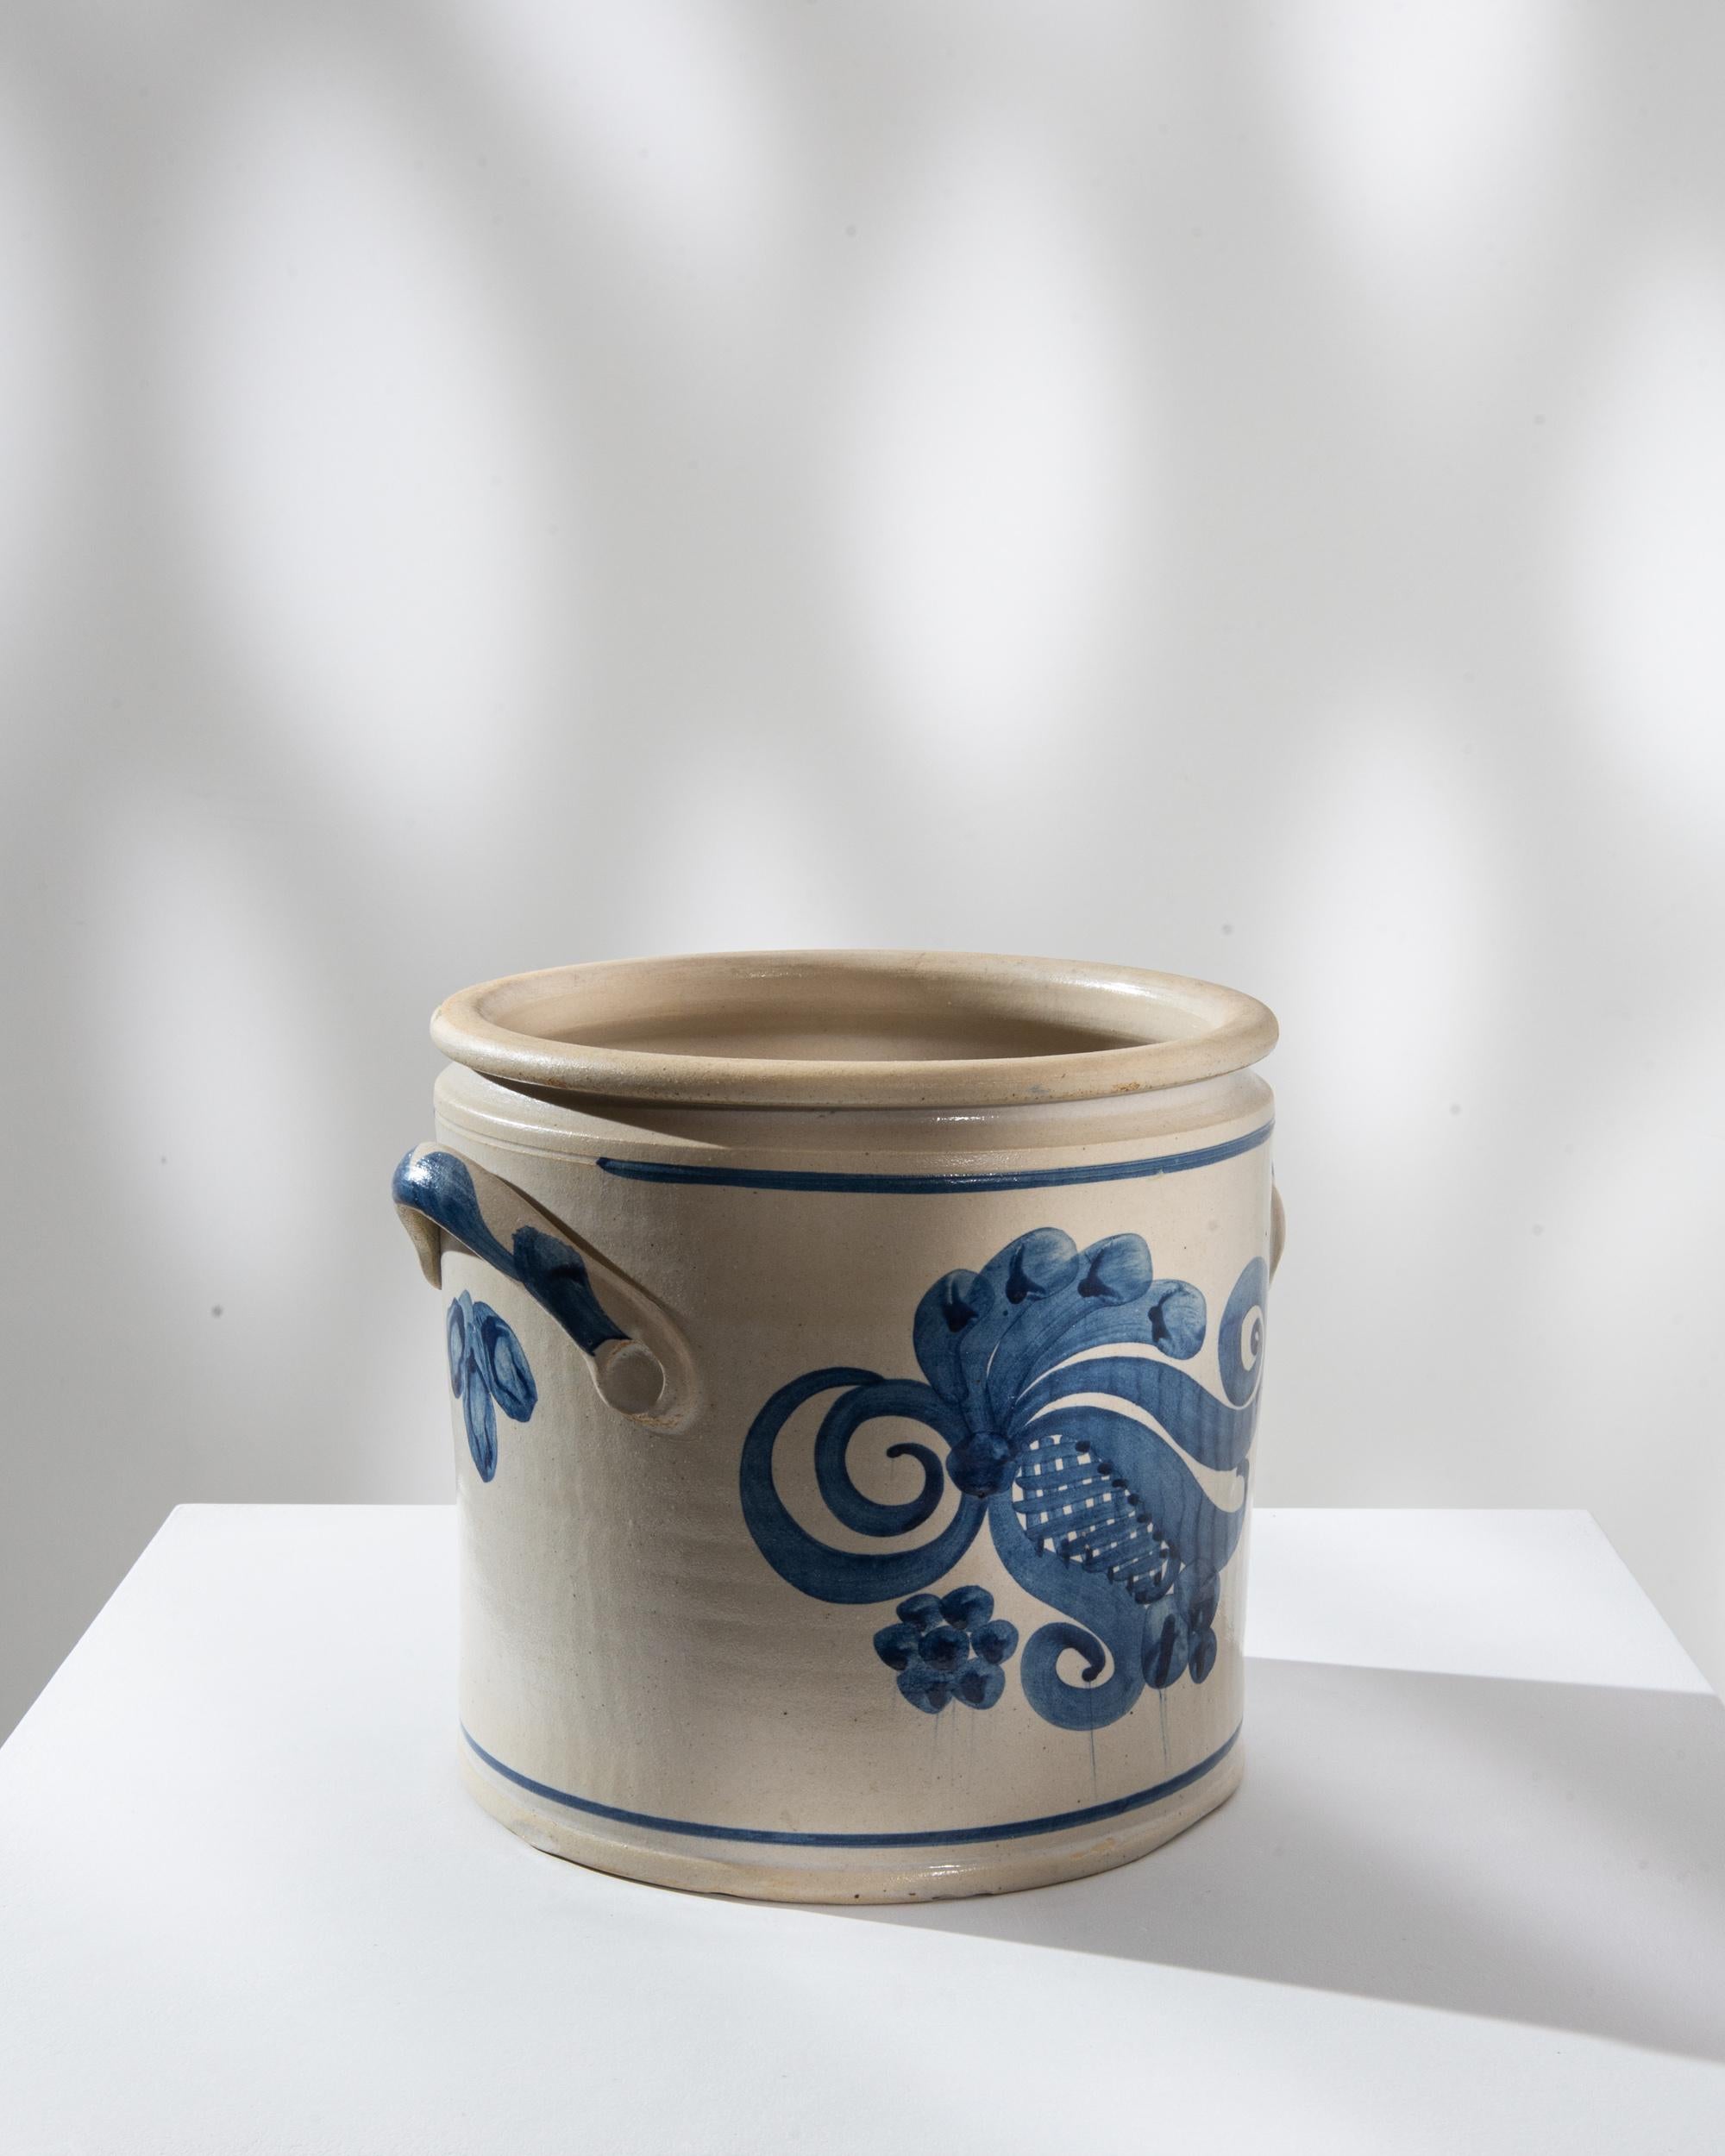 Rehaussez votre décor avec cet exquis pot en céramique allemand du XXe siècle, qui témoigne d'un savoir-faire intemporel. Le pot présente une base blanc crème ornée de motifs floraux bleus complexes, dégageant un air d'élégance et de sophistication.